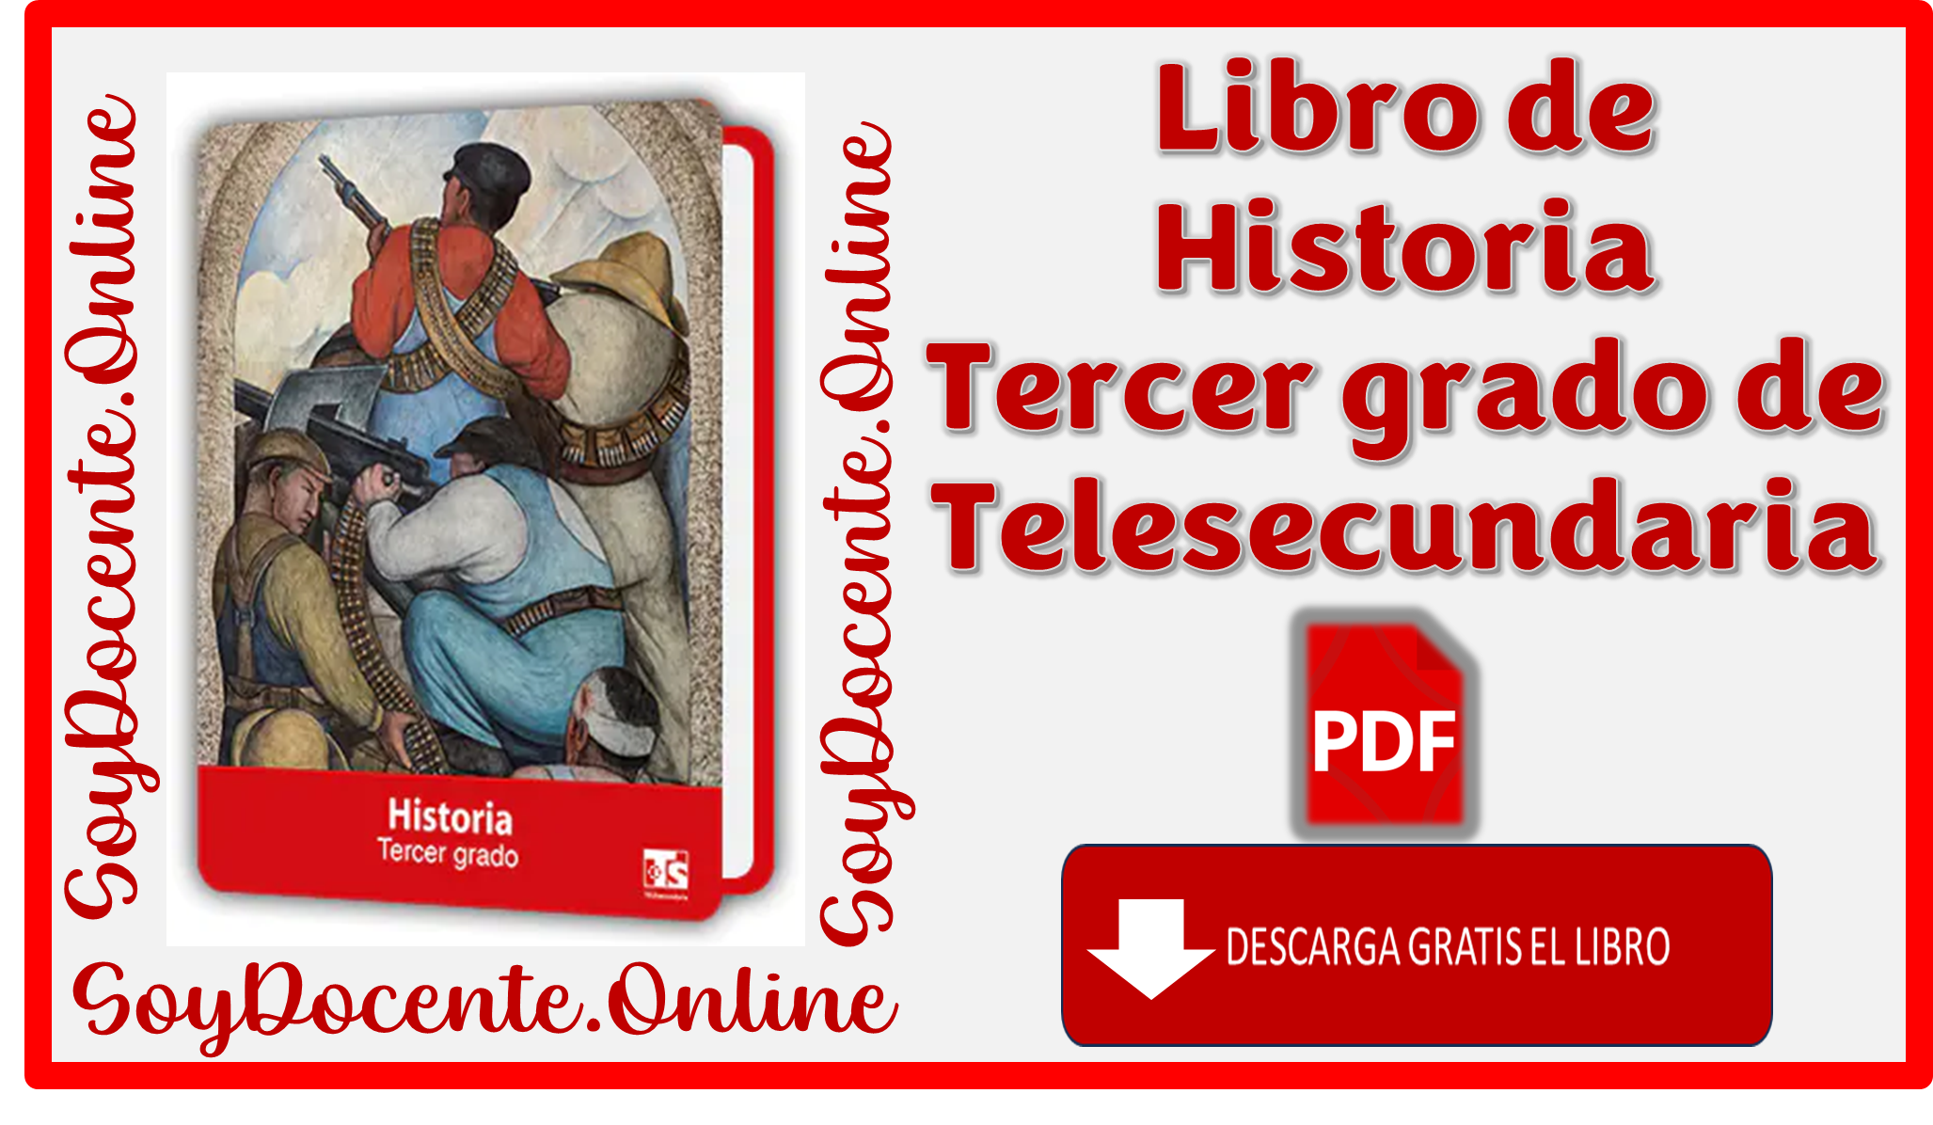 Aquí podrás descargar el Libro de Historia de tercer grado de Telesecundaria, elaborado por la SEP y distribuido por CONALITEG